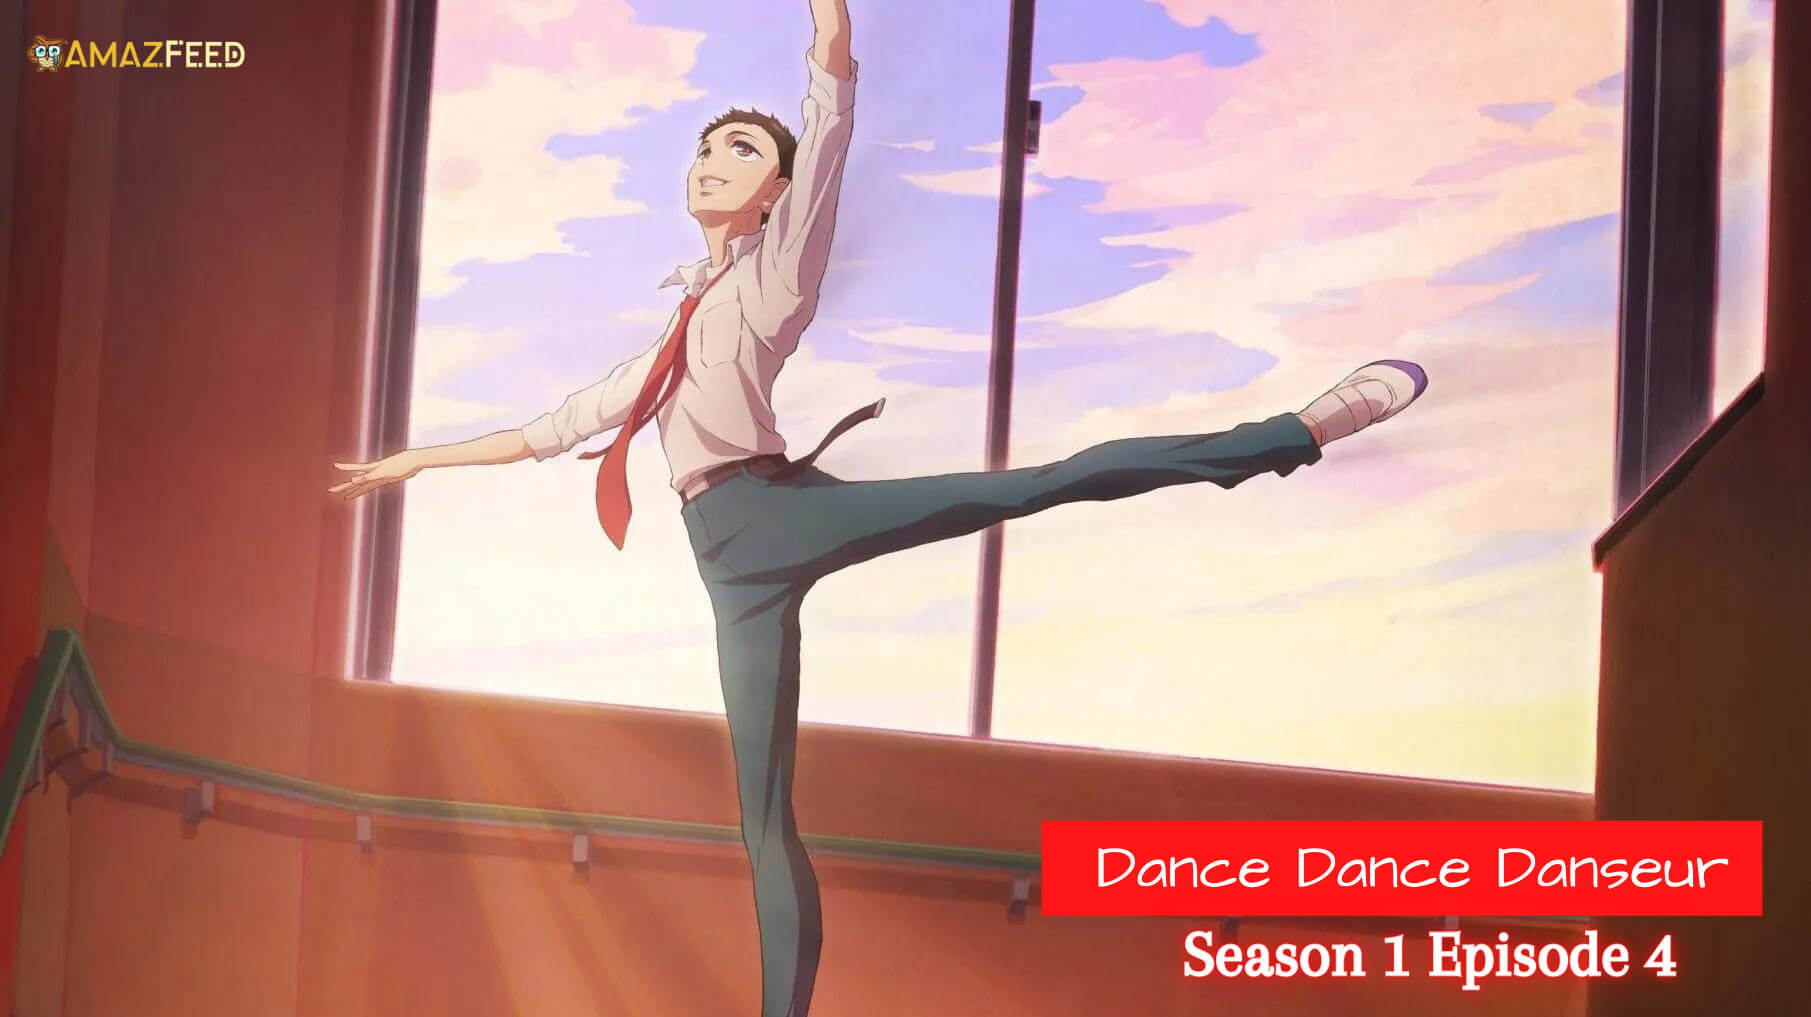 Dance Dance Danseur Season 1 Episode 4 Release date